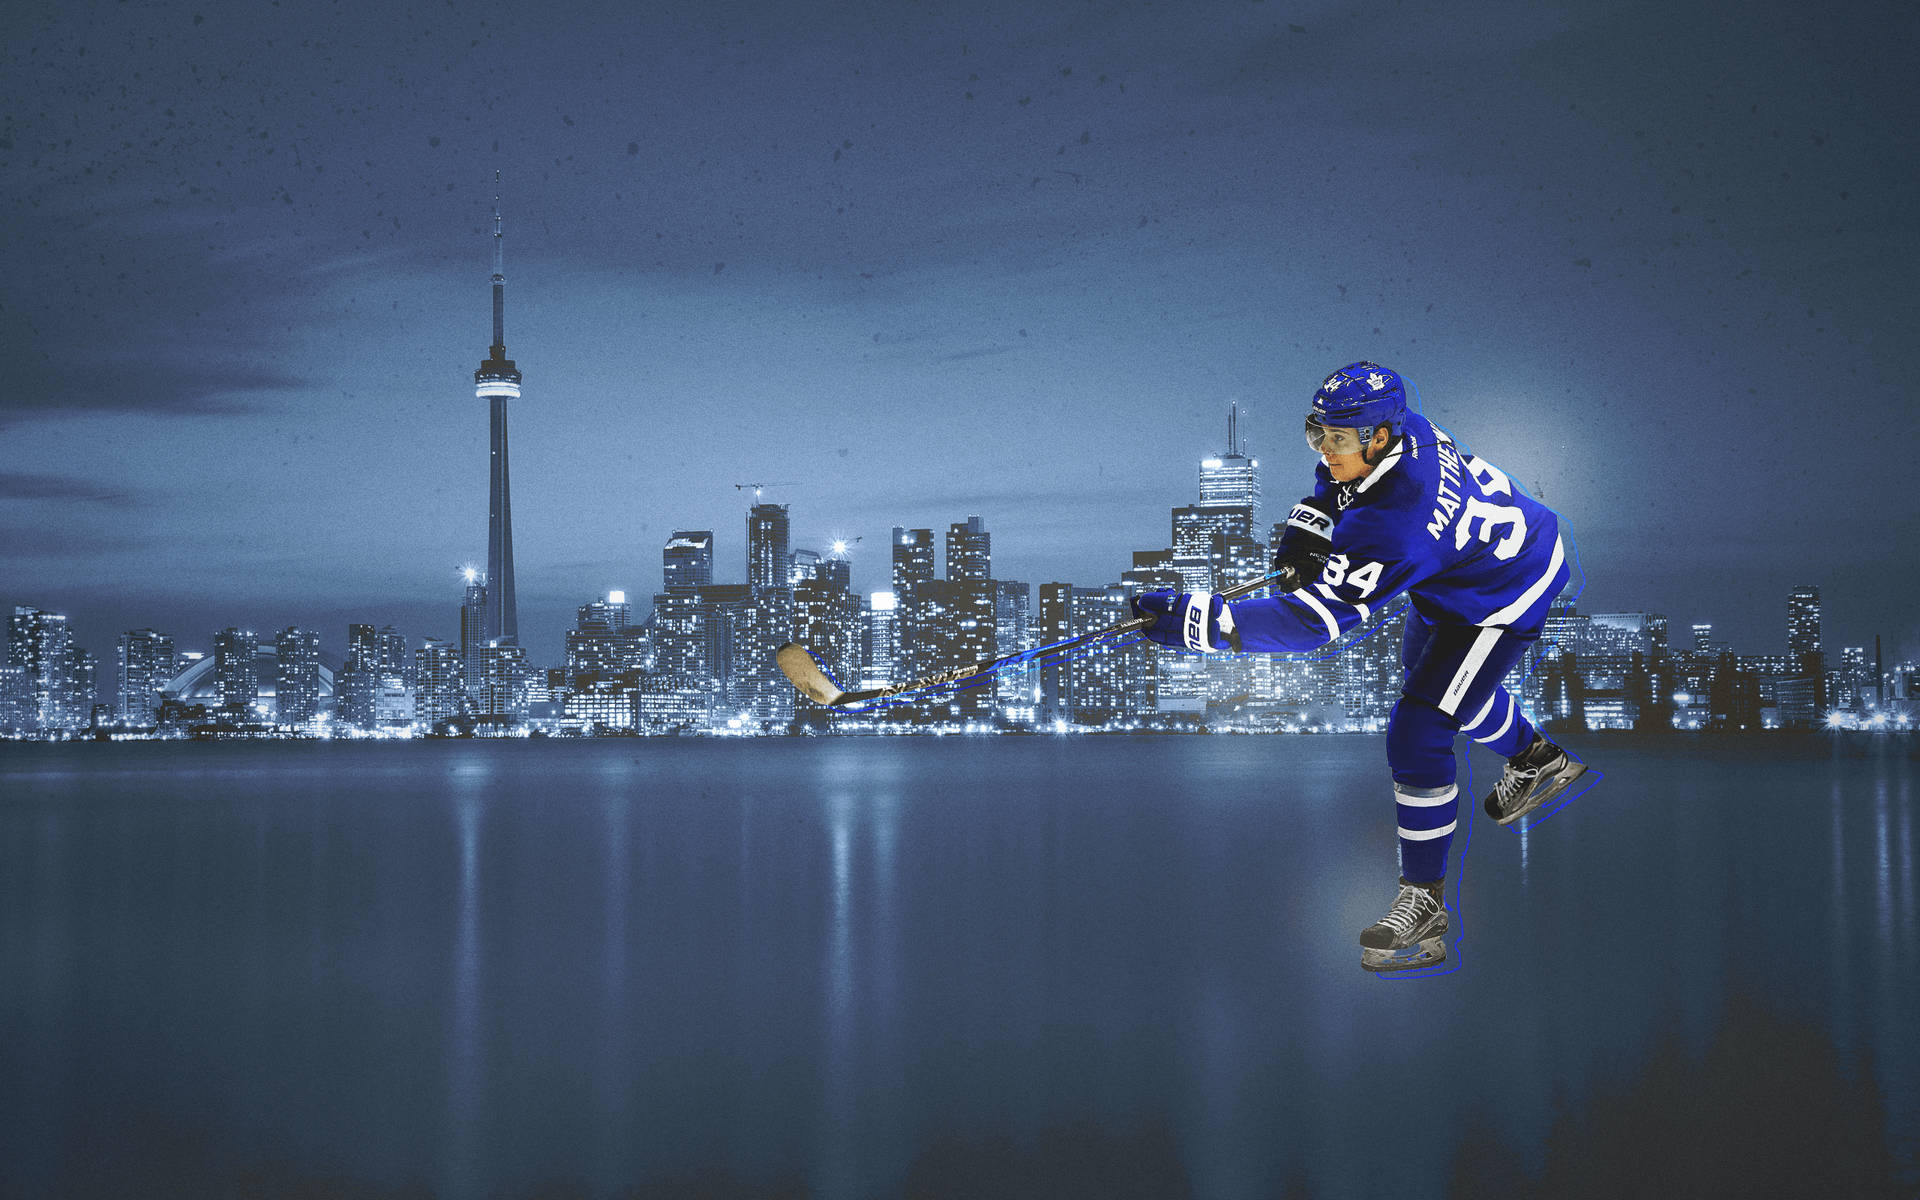 Auston Matthews Cityscape Baggrundsbillede - Dette billede viser Auston Matthews fra Toronto Maple Leafs glidende gennem byens skyskabere. Wallpaper